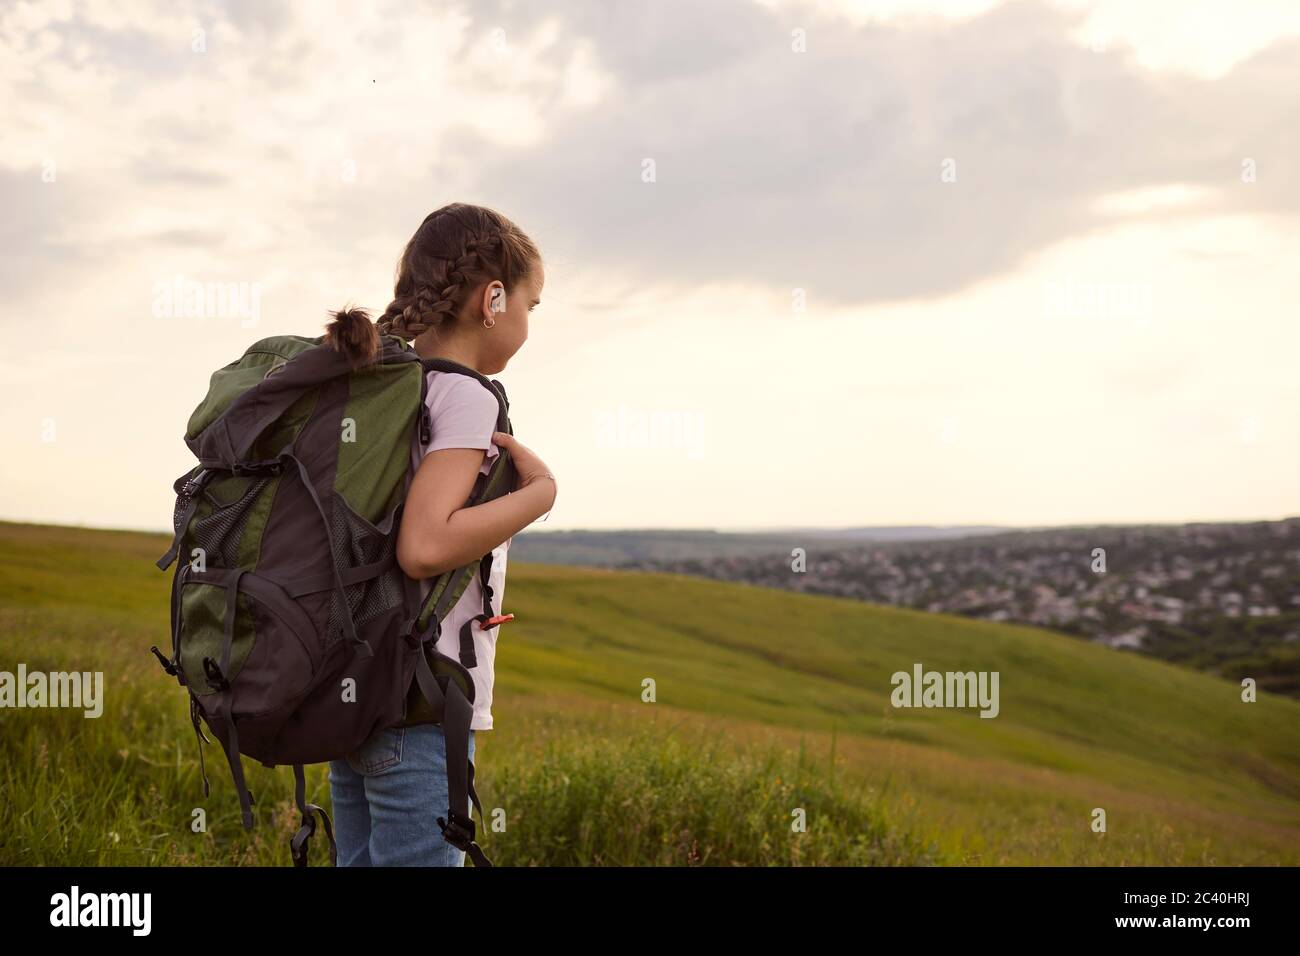 Petite fille touristique avec un sac à dos sur une randonnée marche avant dans la nature vue arrière. Banque D'Images